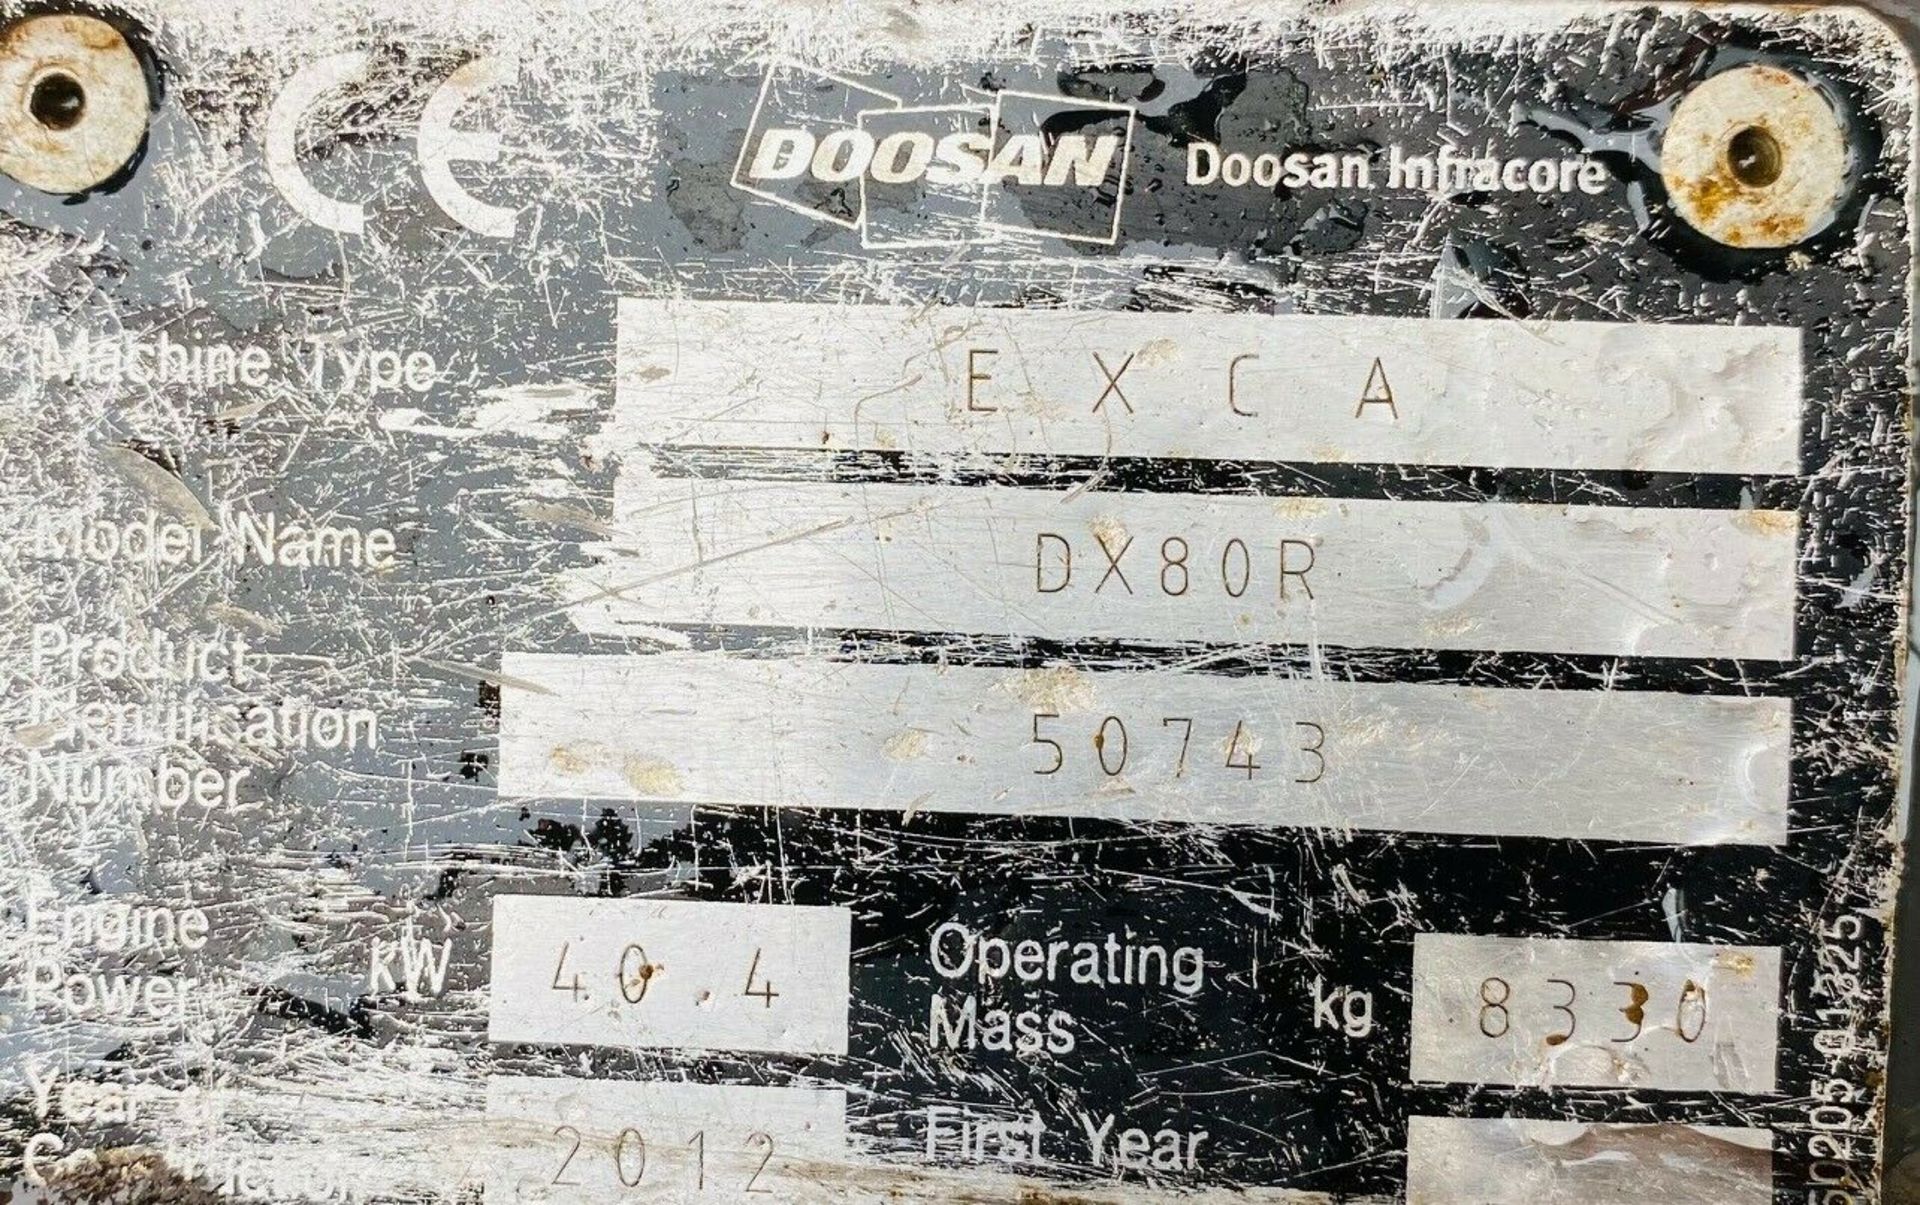 Doosan DX80 Excavator 2012 - Image 12 of 13